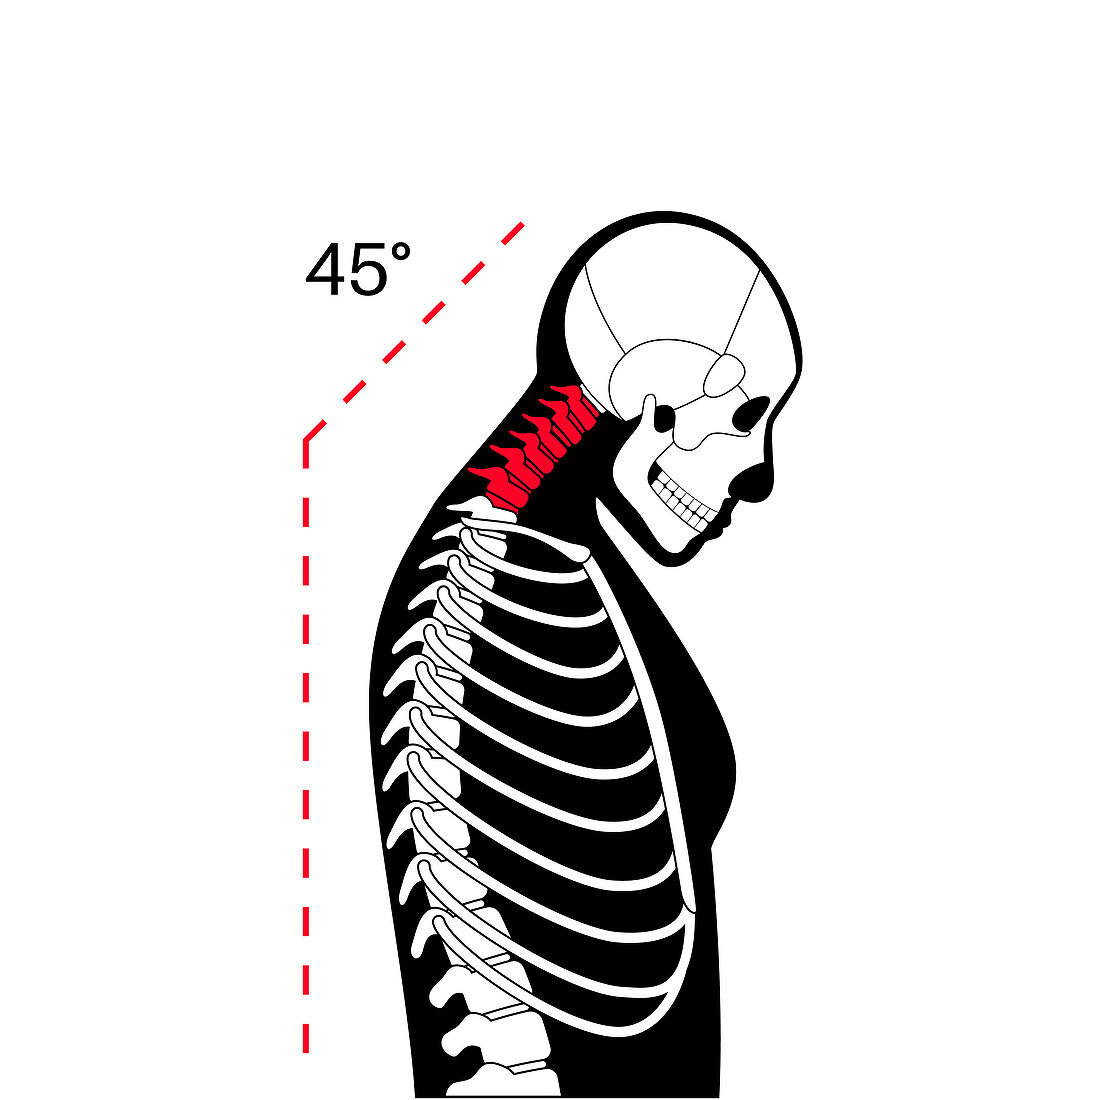 Neck vertebrae deformity, illustration